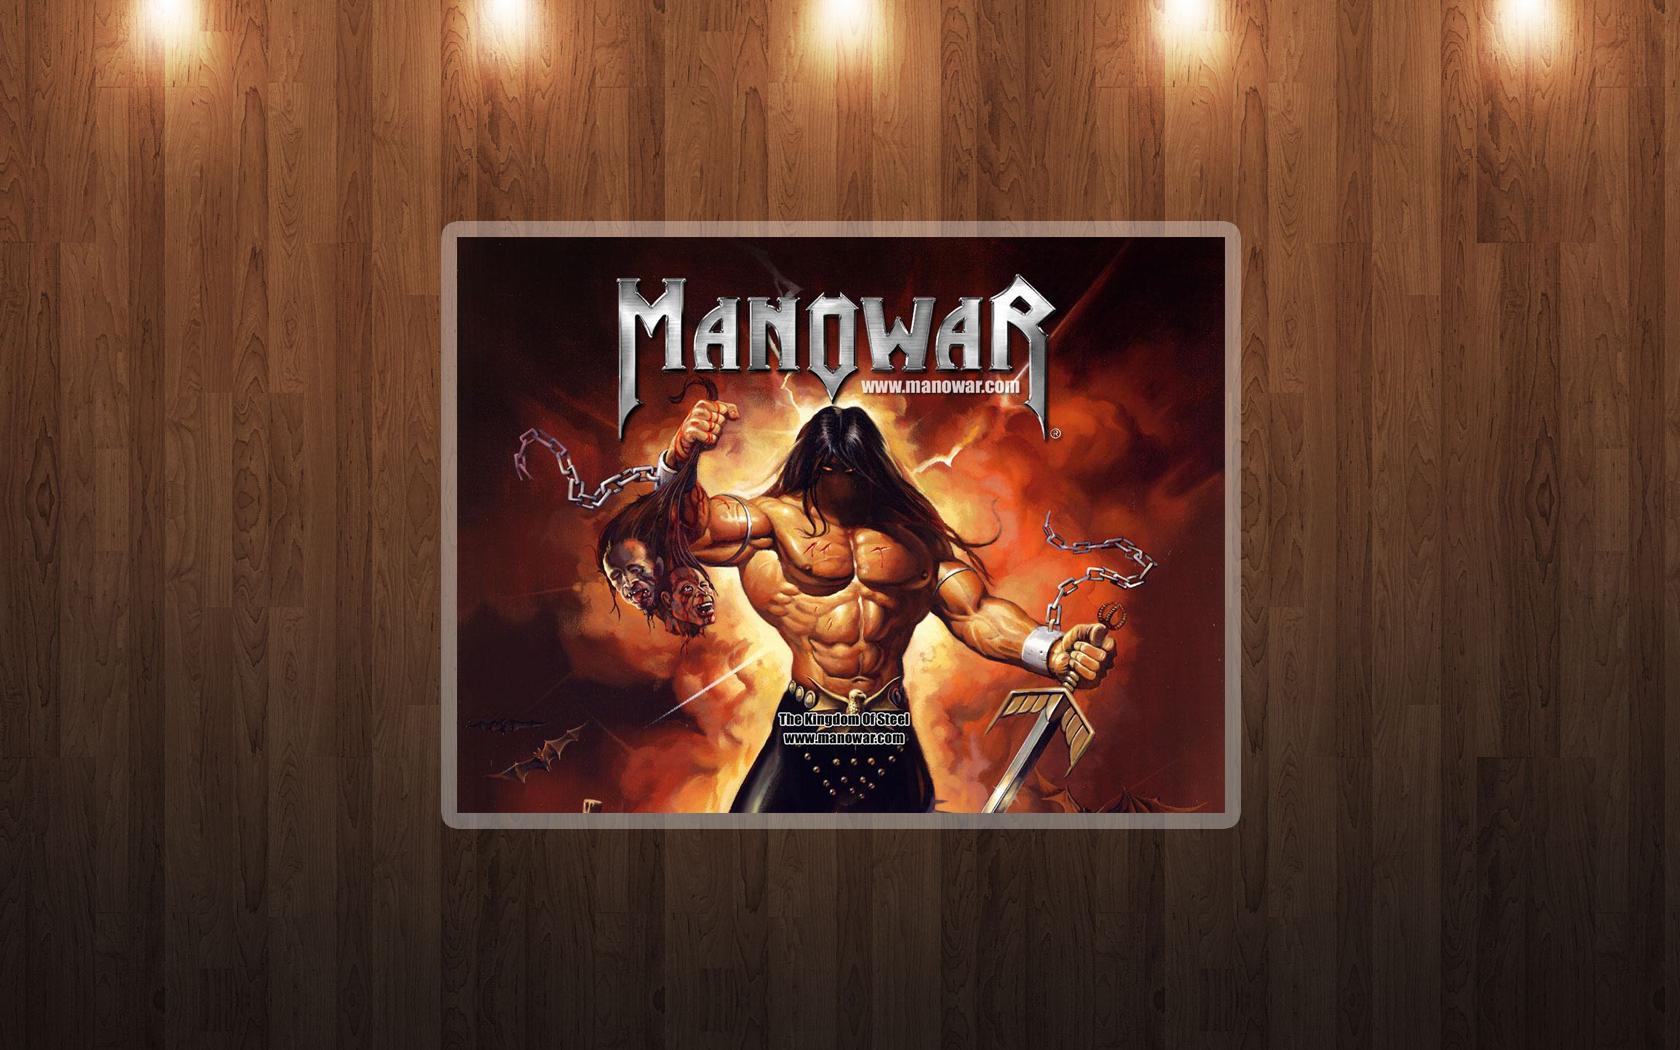 Manowar image